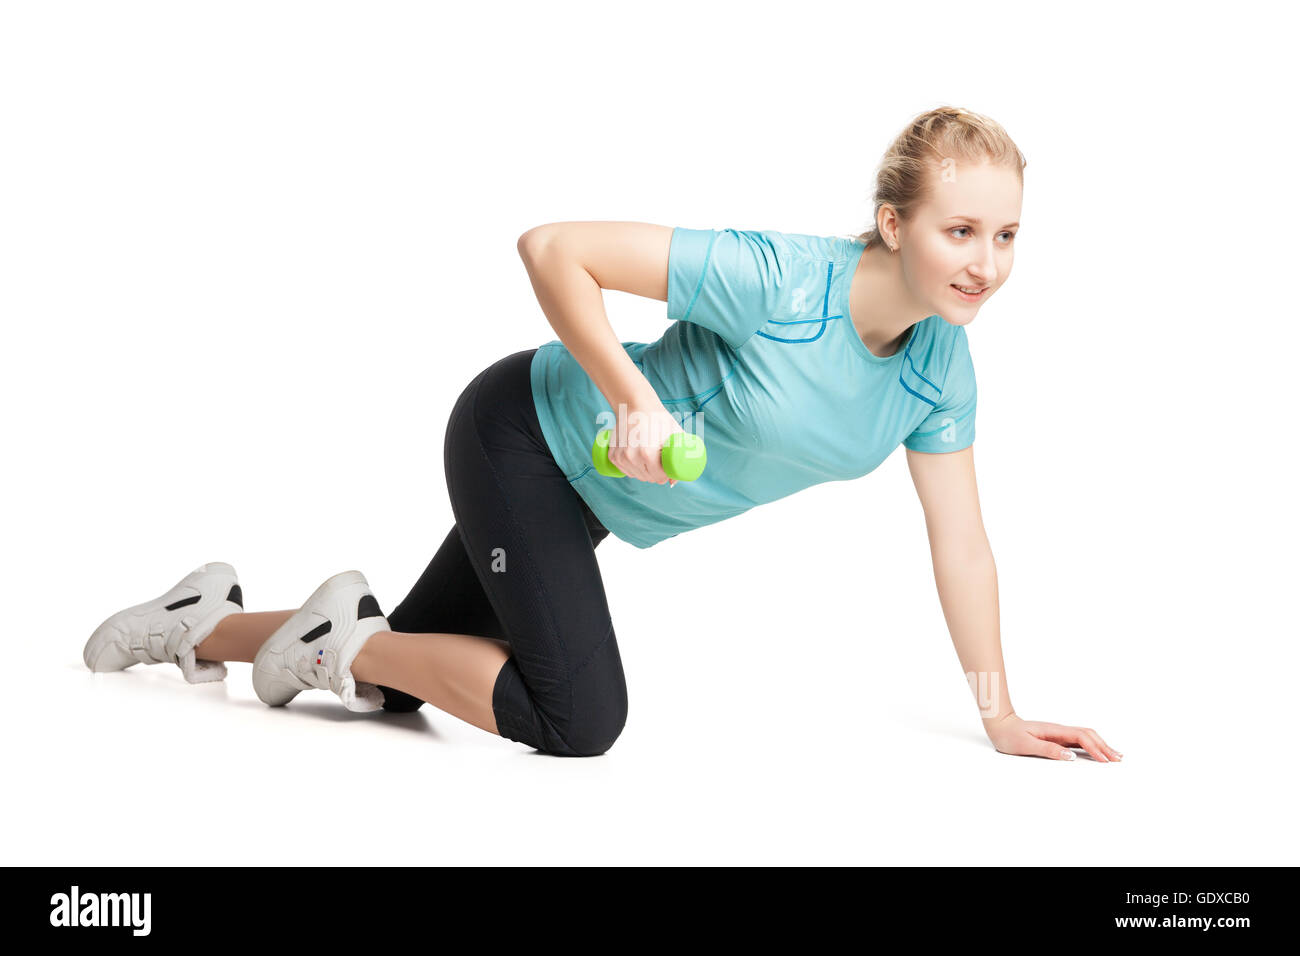 Sportliche junge Frau klappt mit grünen Hanteln Stockfoto